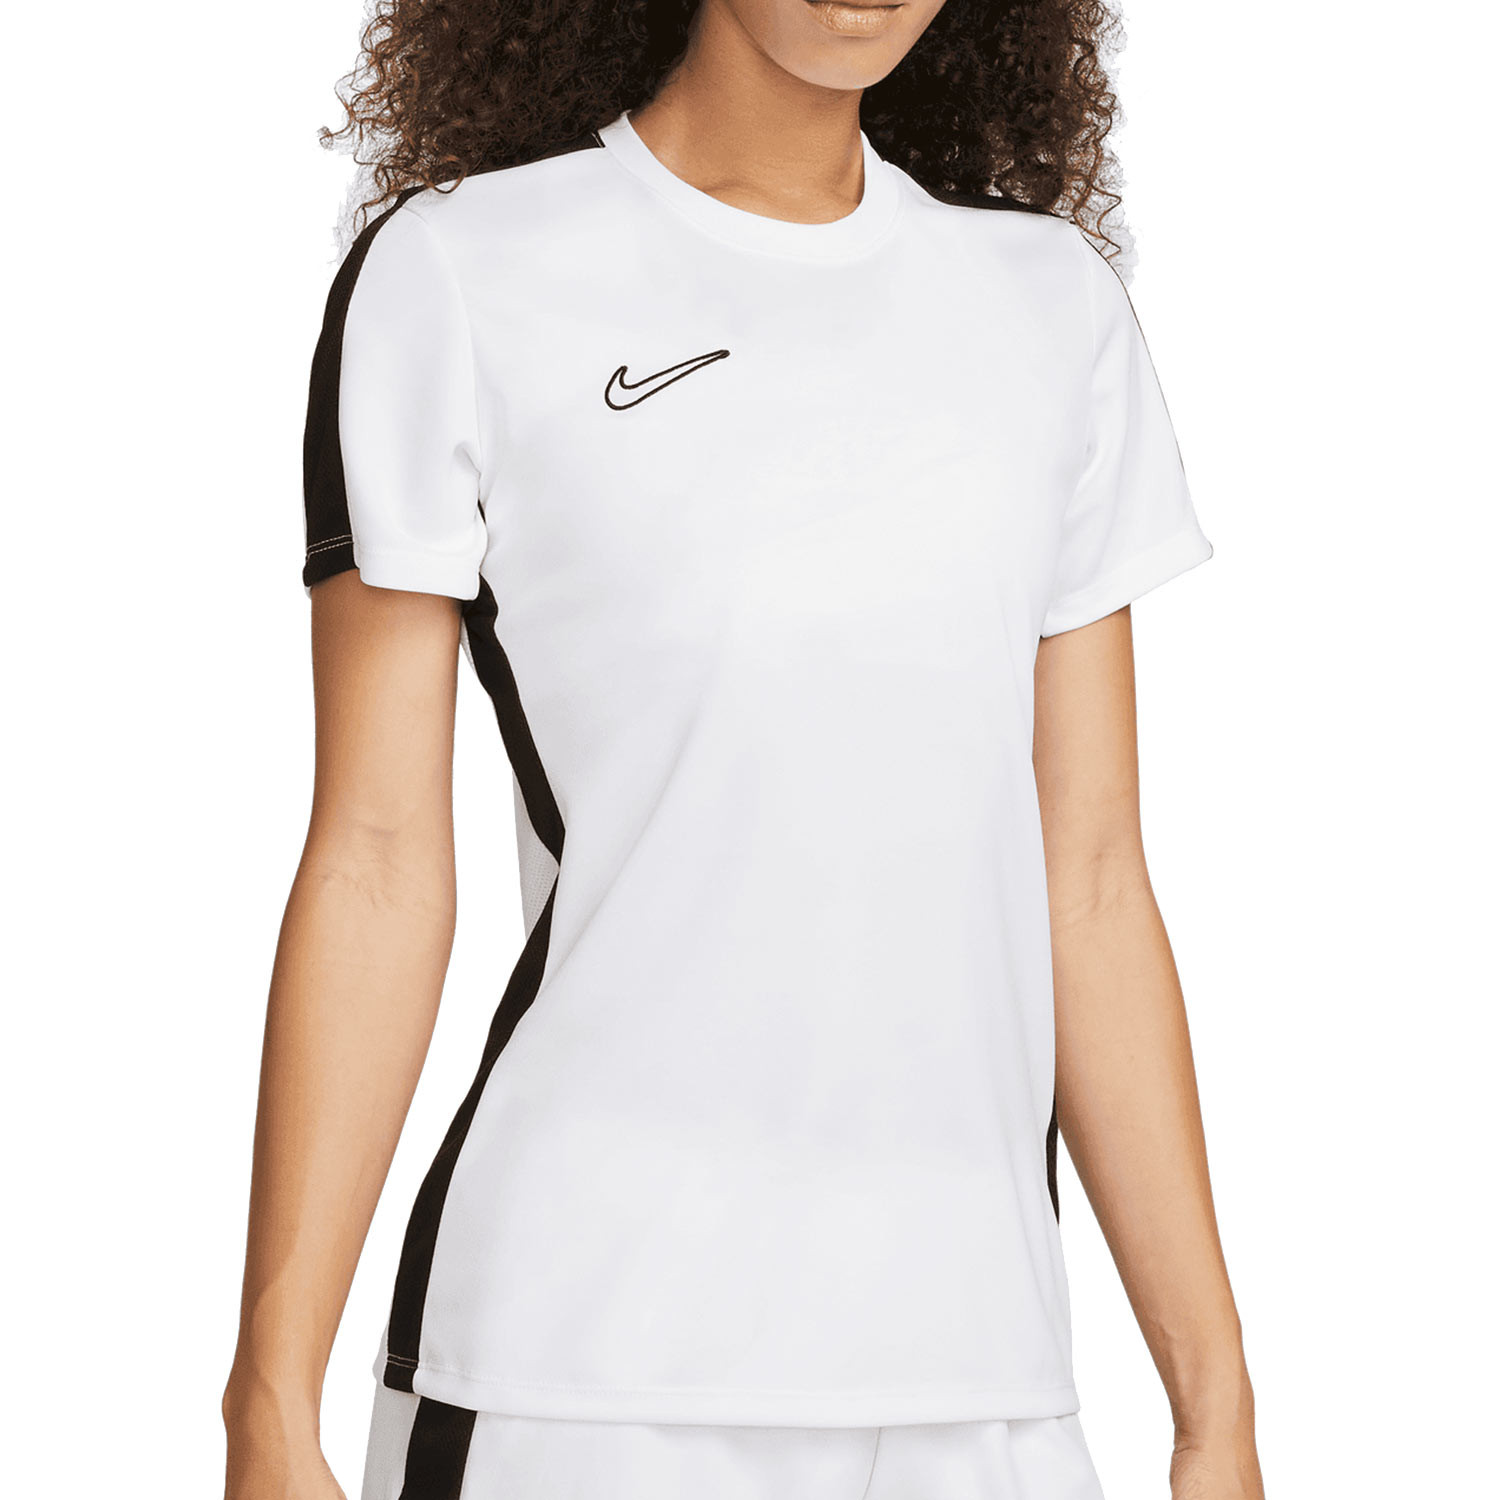 Sensación Específico primero Camiseta entrenamiento Nike mujer Dri-Fit Academy blanca | futbolmania